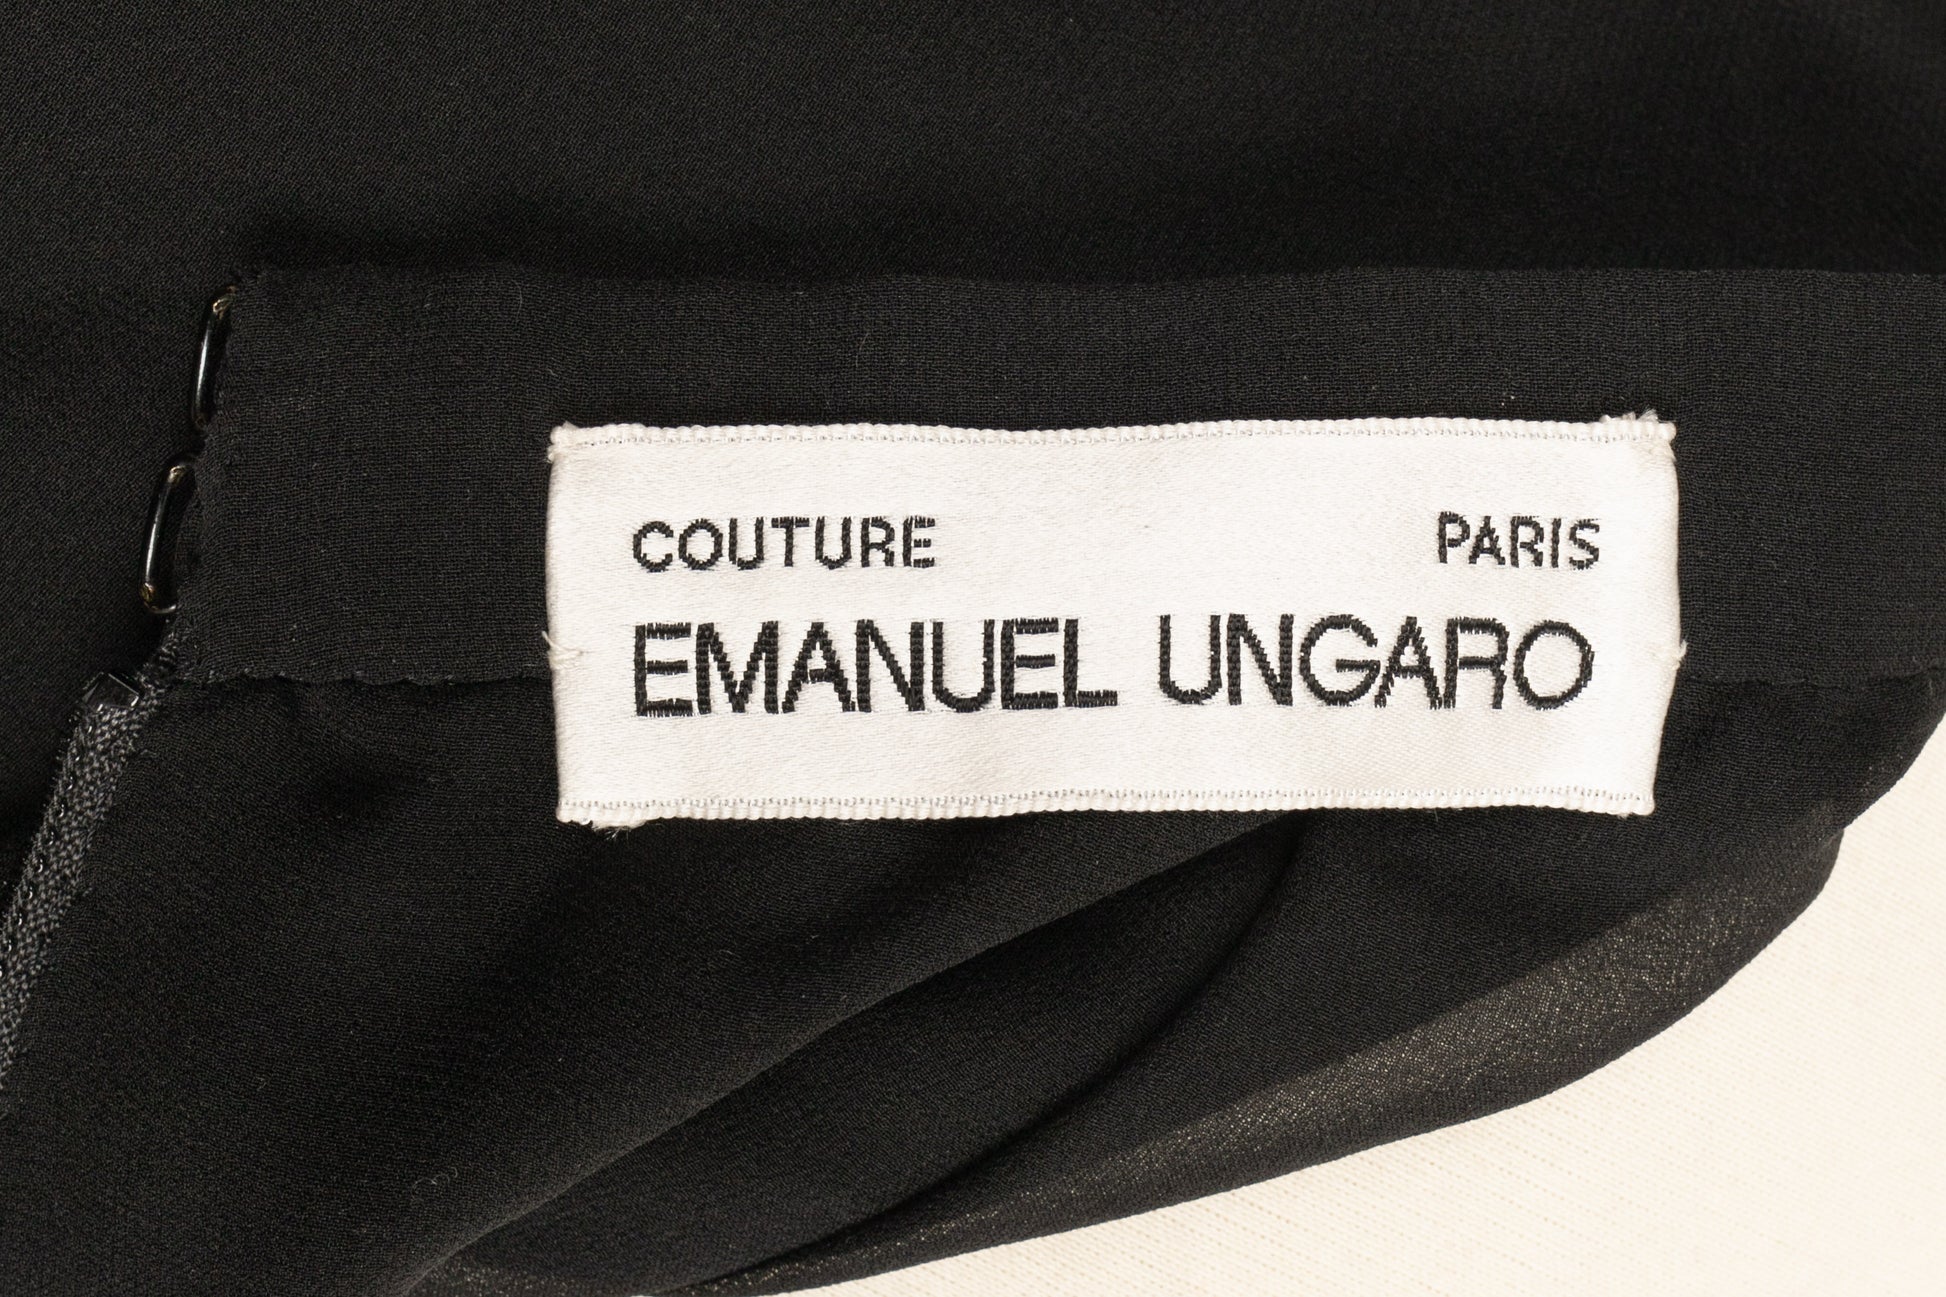 Ensemble Ungaro Haute Couture